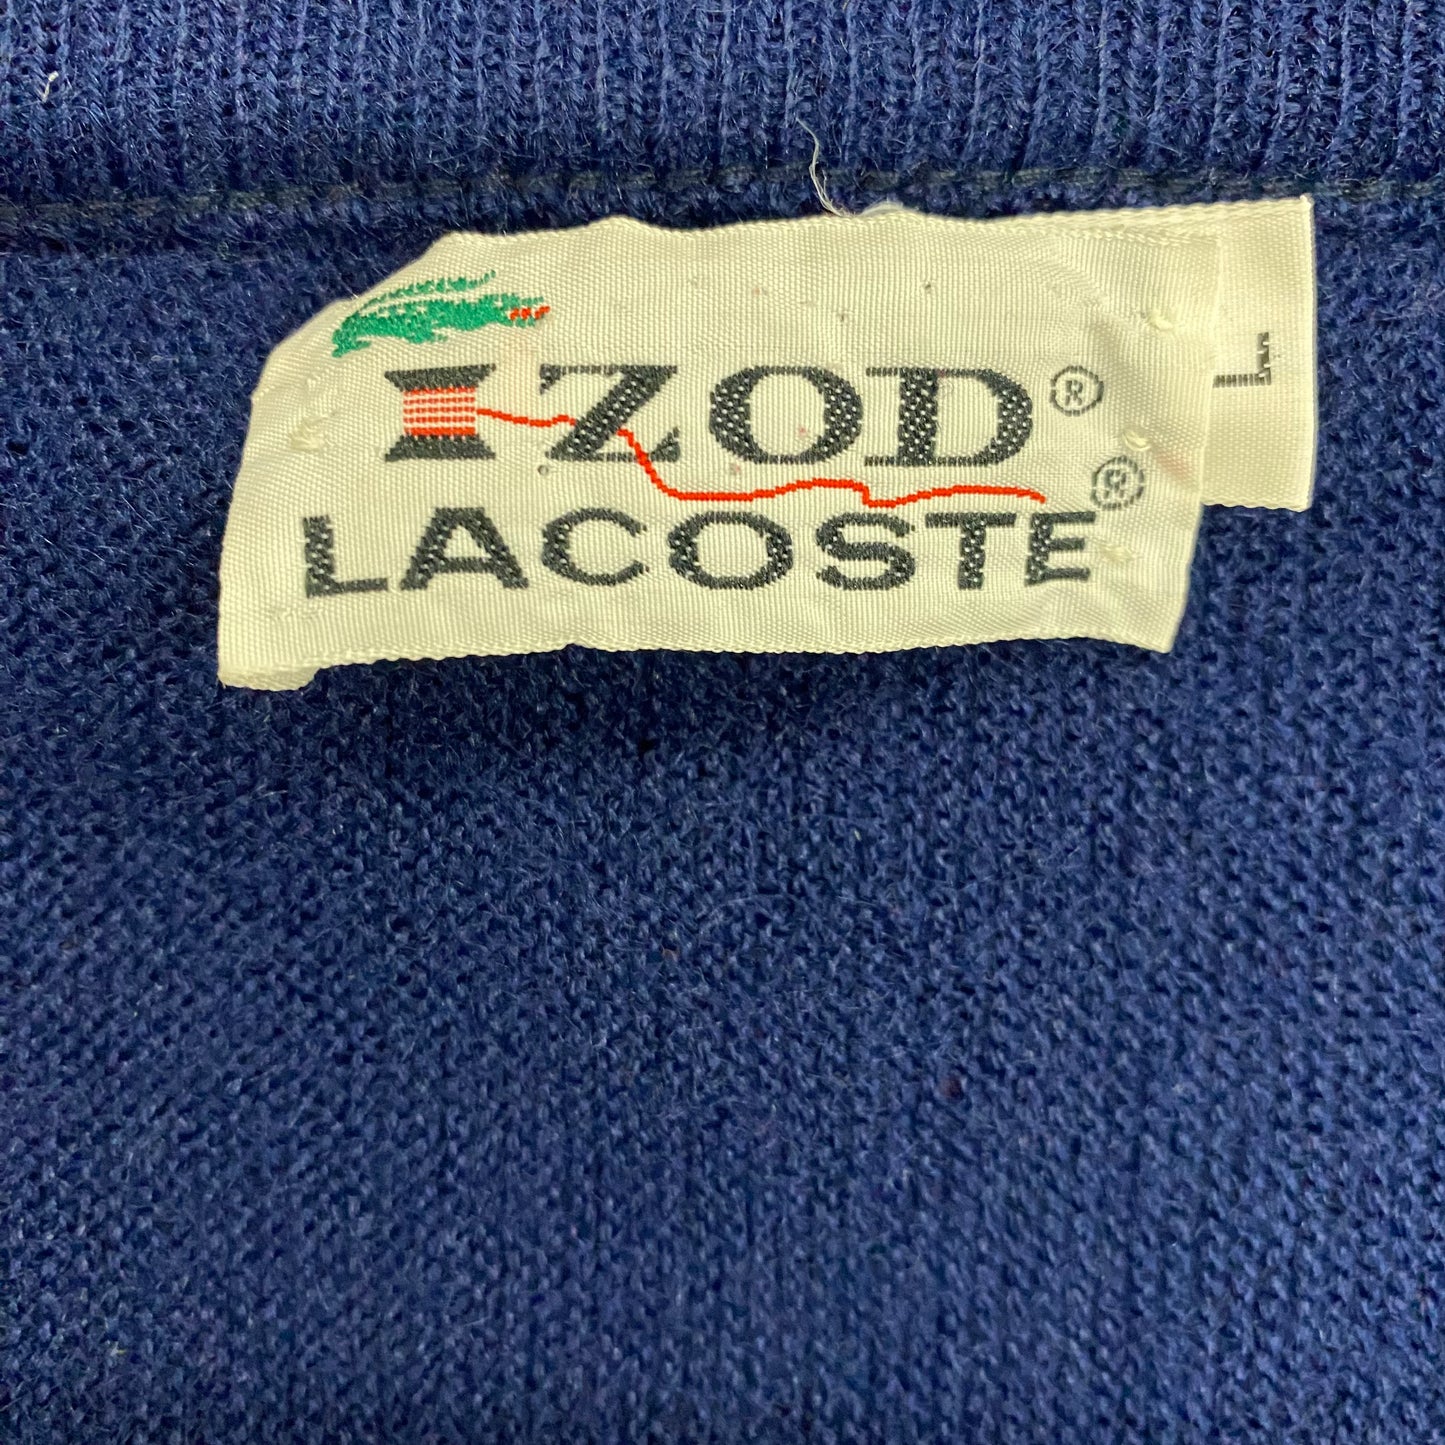 Vintage 1960s Izod Lacoste Navy Blue V-Neck Sweater - Size Large